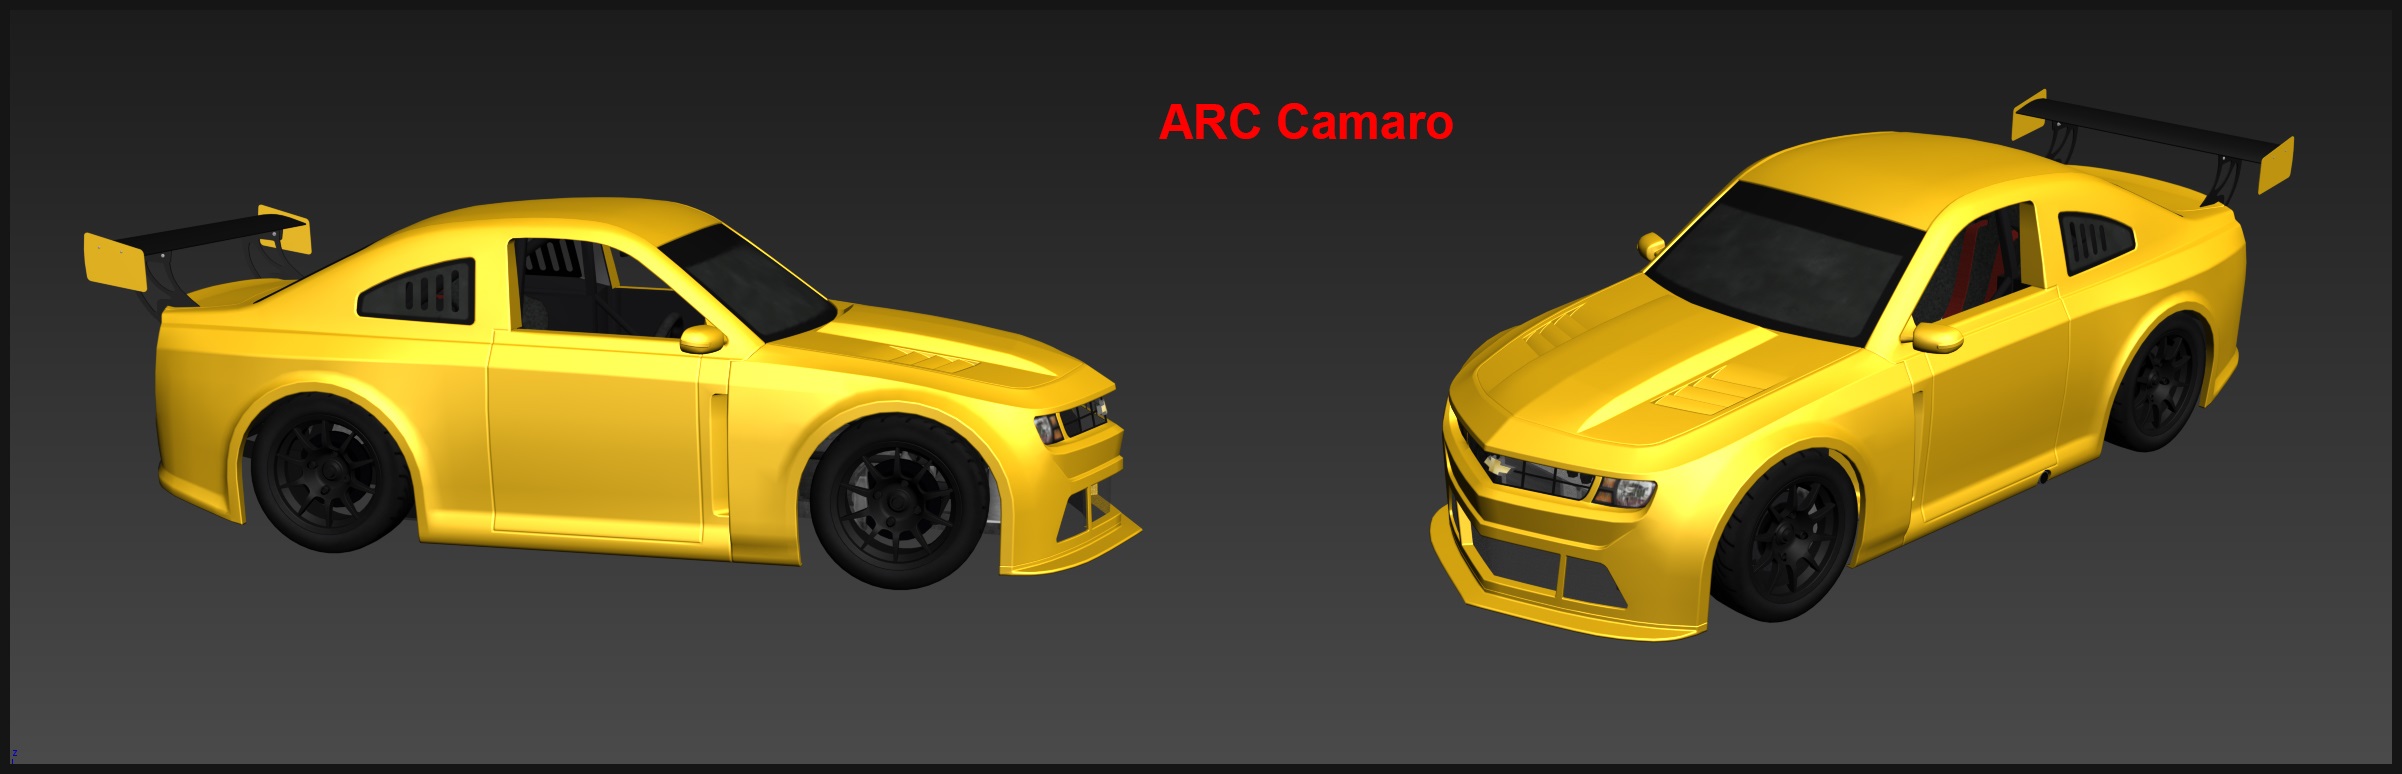 Automobilista ACR Camaro.jpg